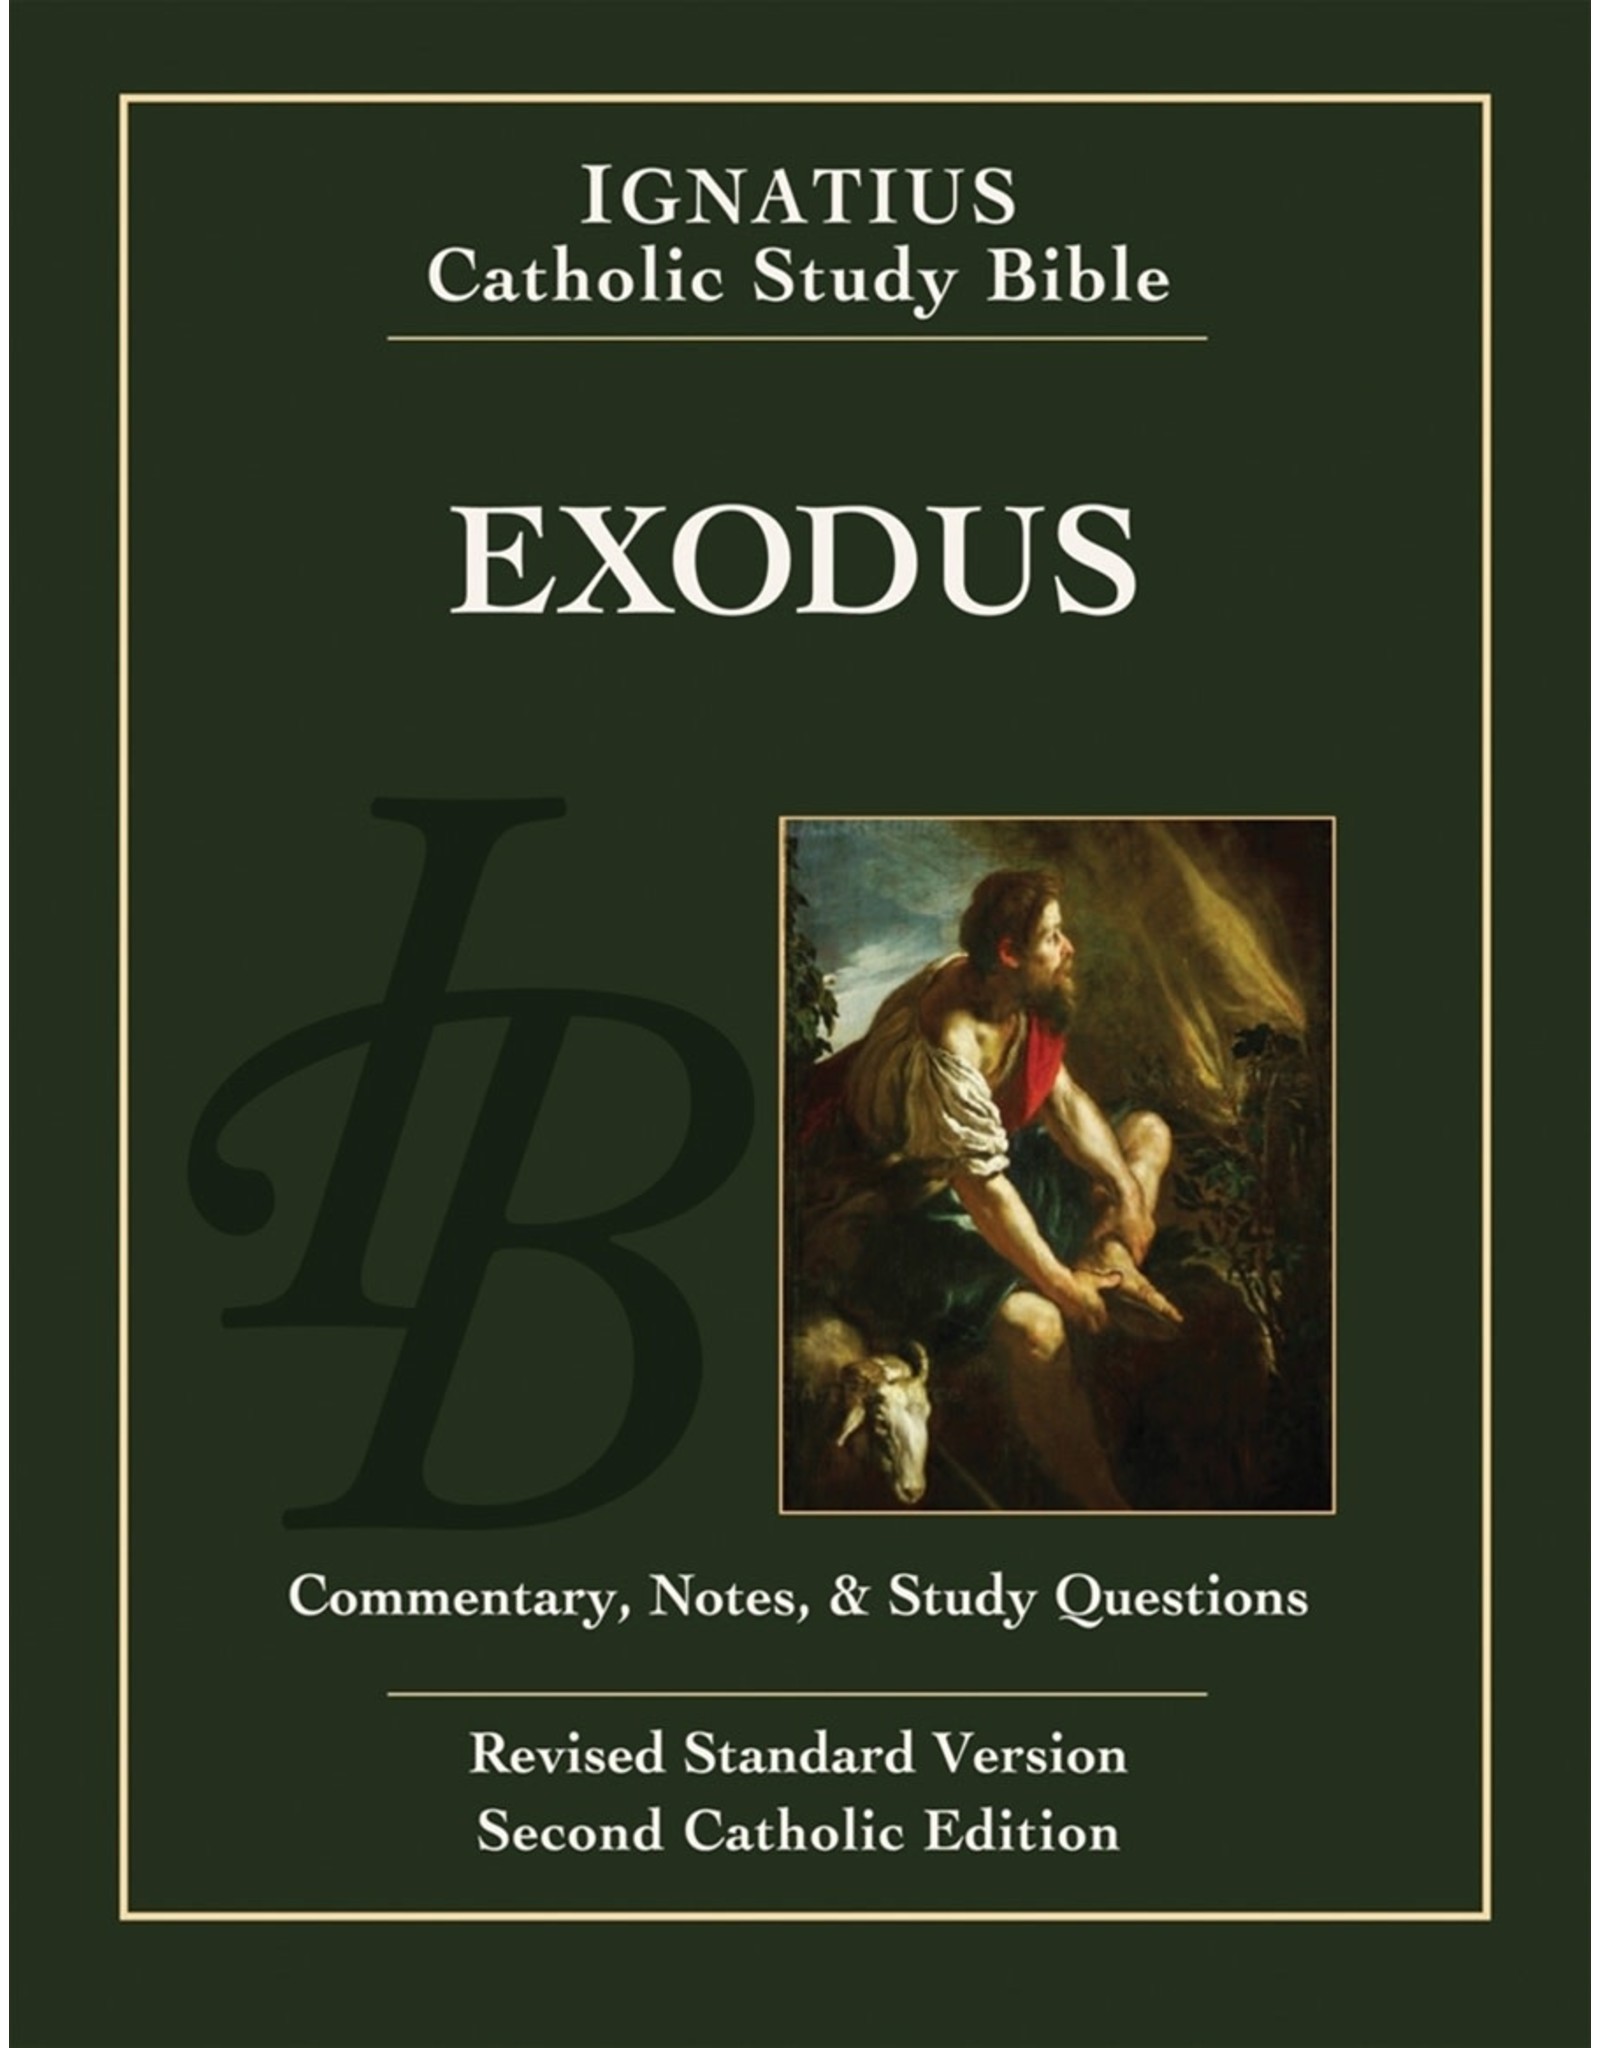 RSV Ignatius Catholic Study Bible-Exodus